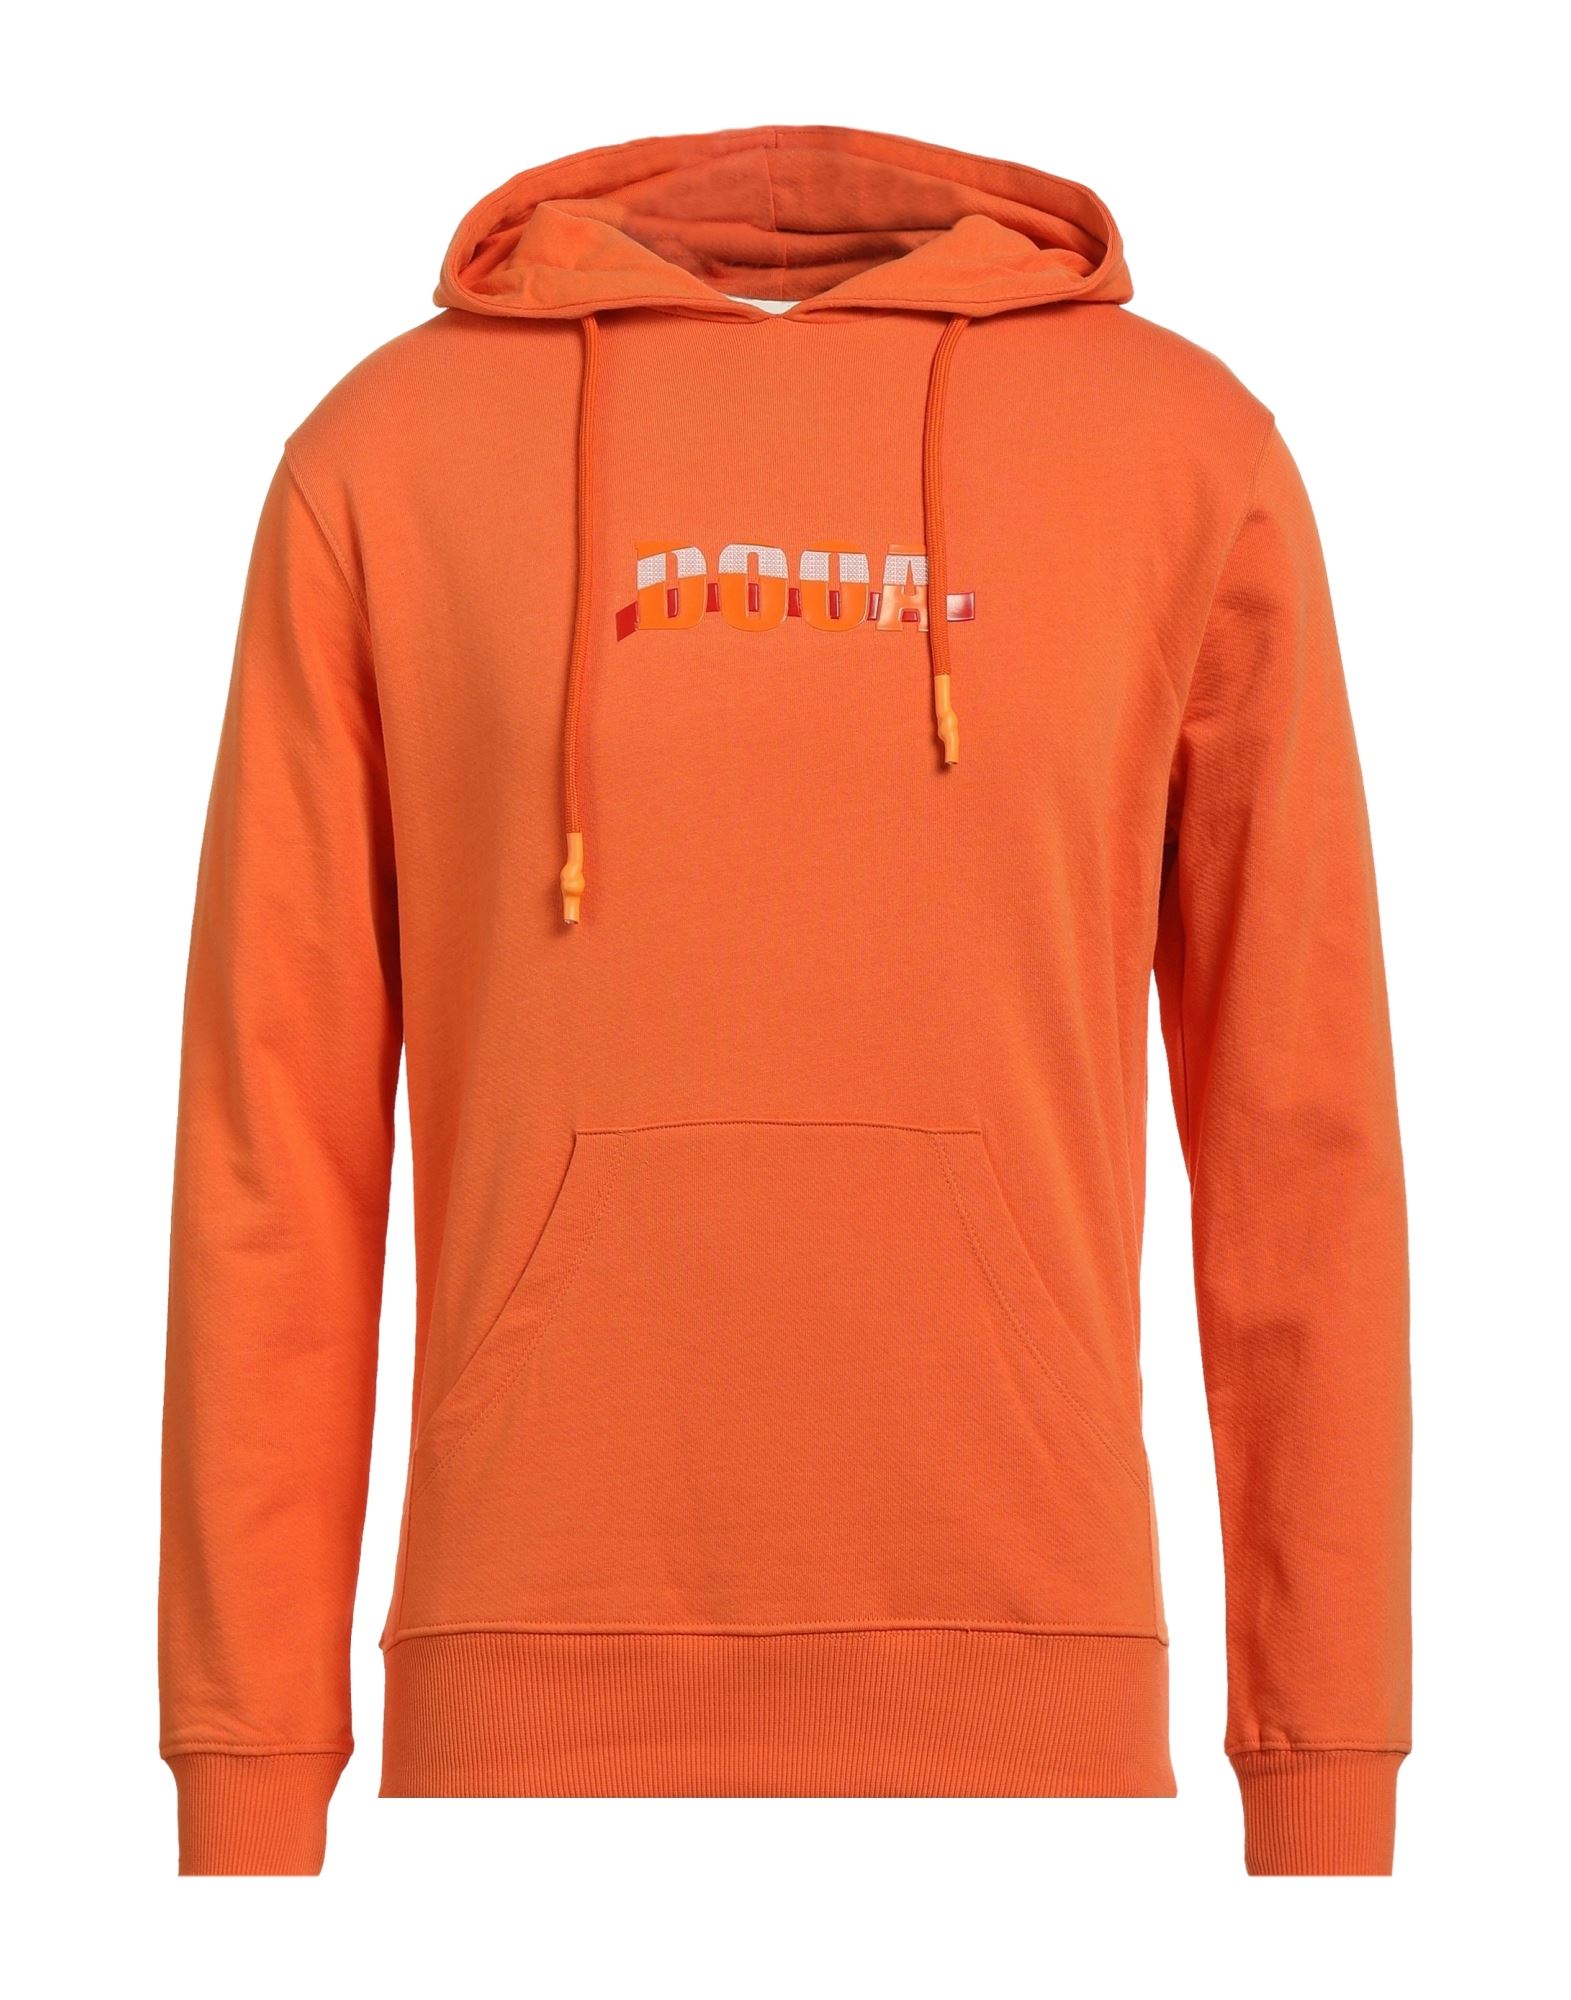 DOOA Sweatshirt Herren Orange von DOOA